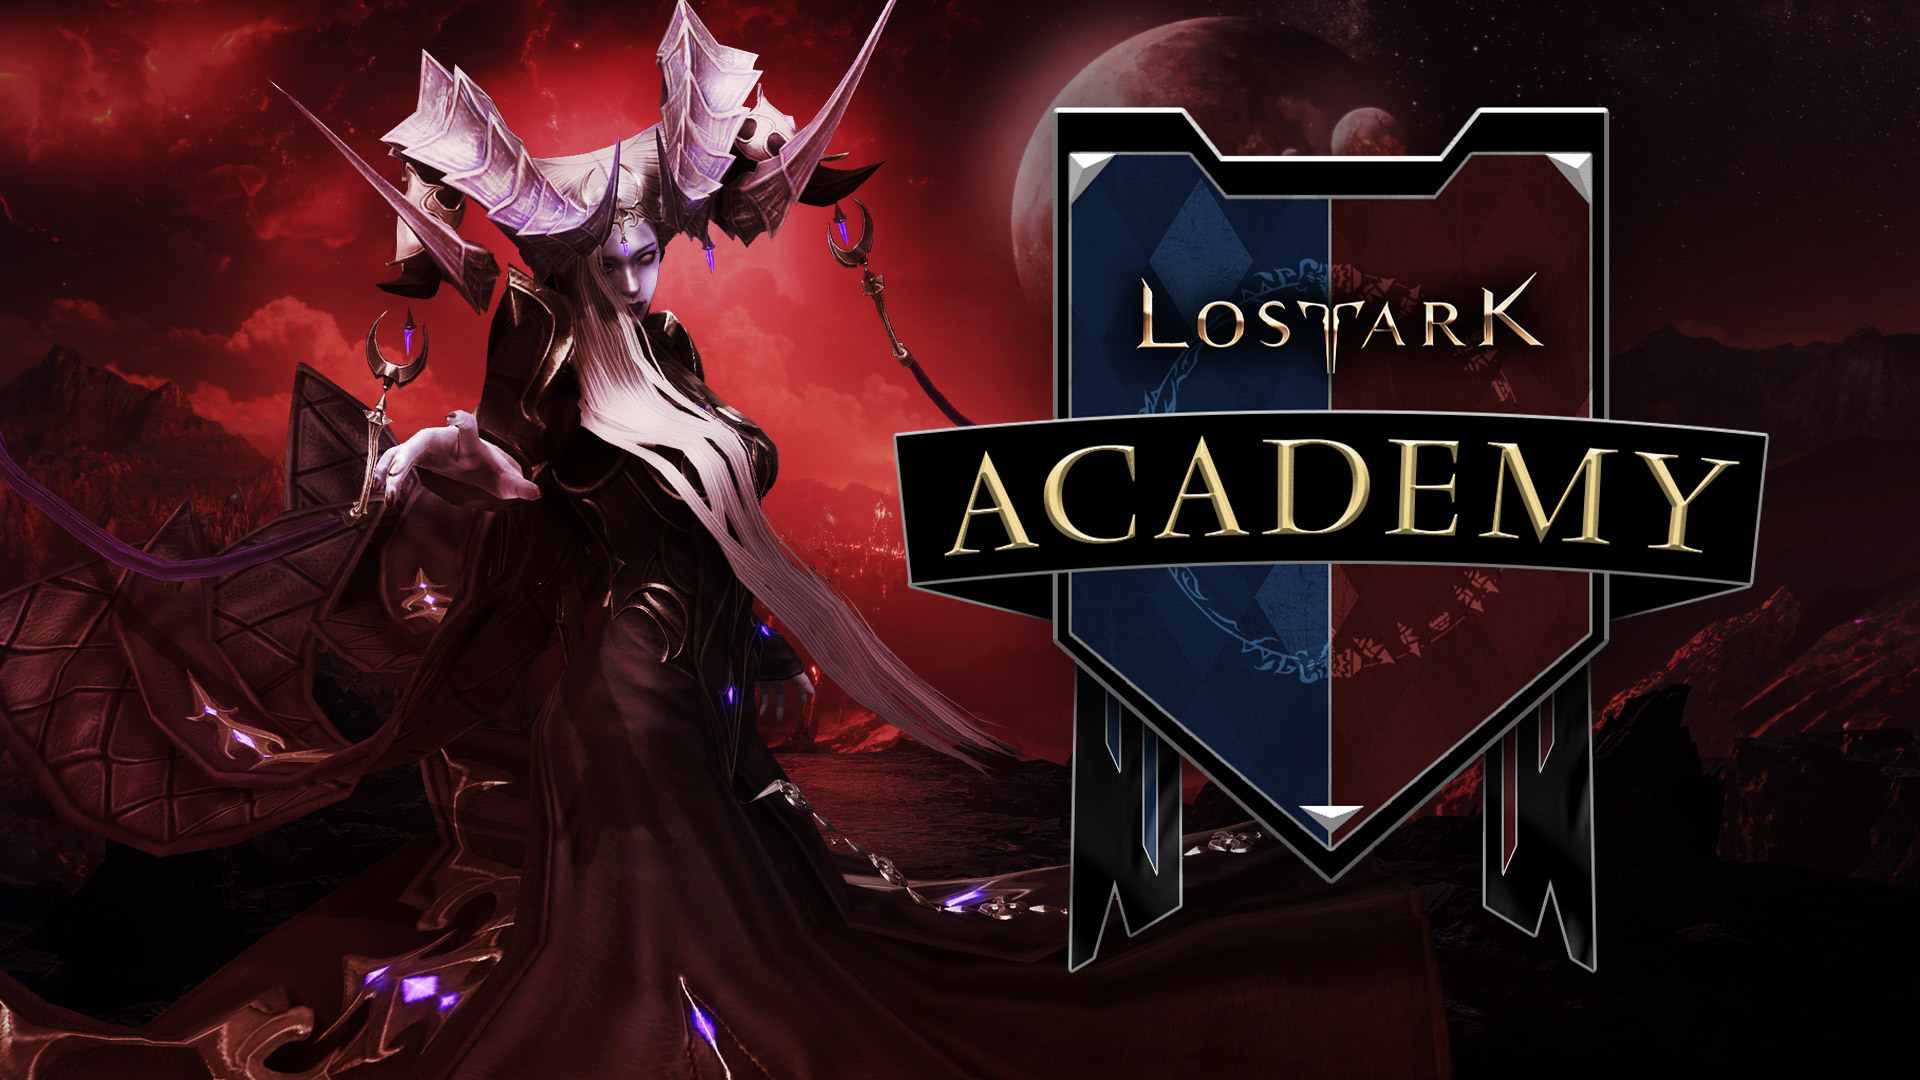 Lost Ark Academy - Valtan Legion Raid - News